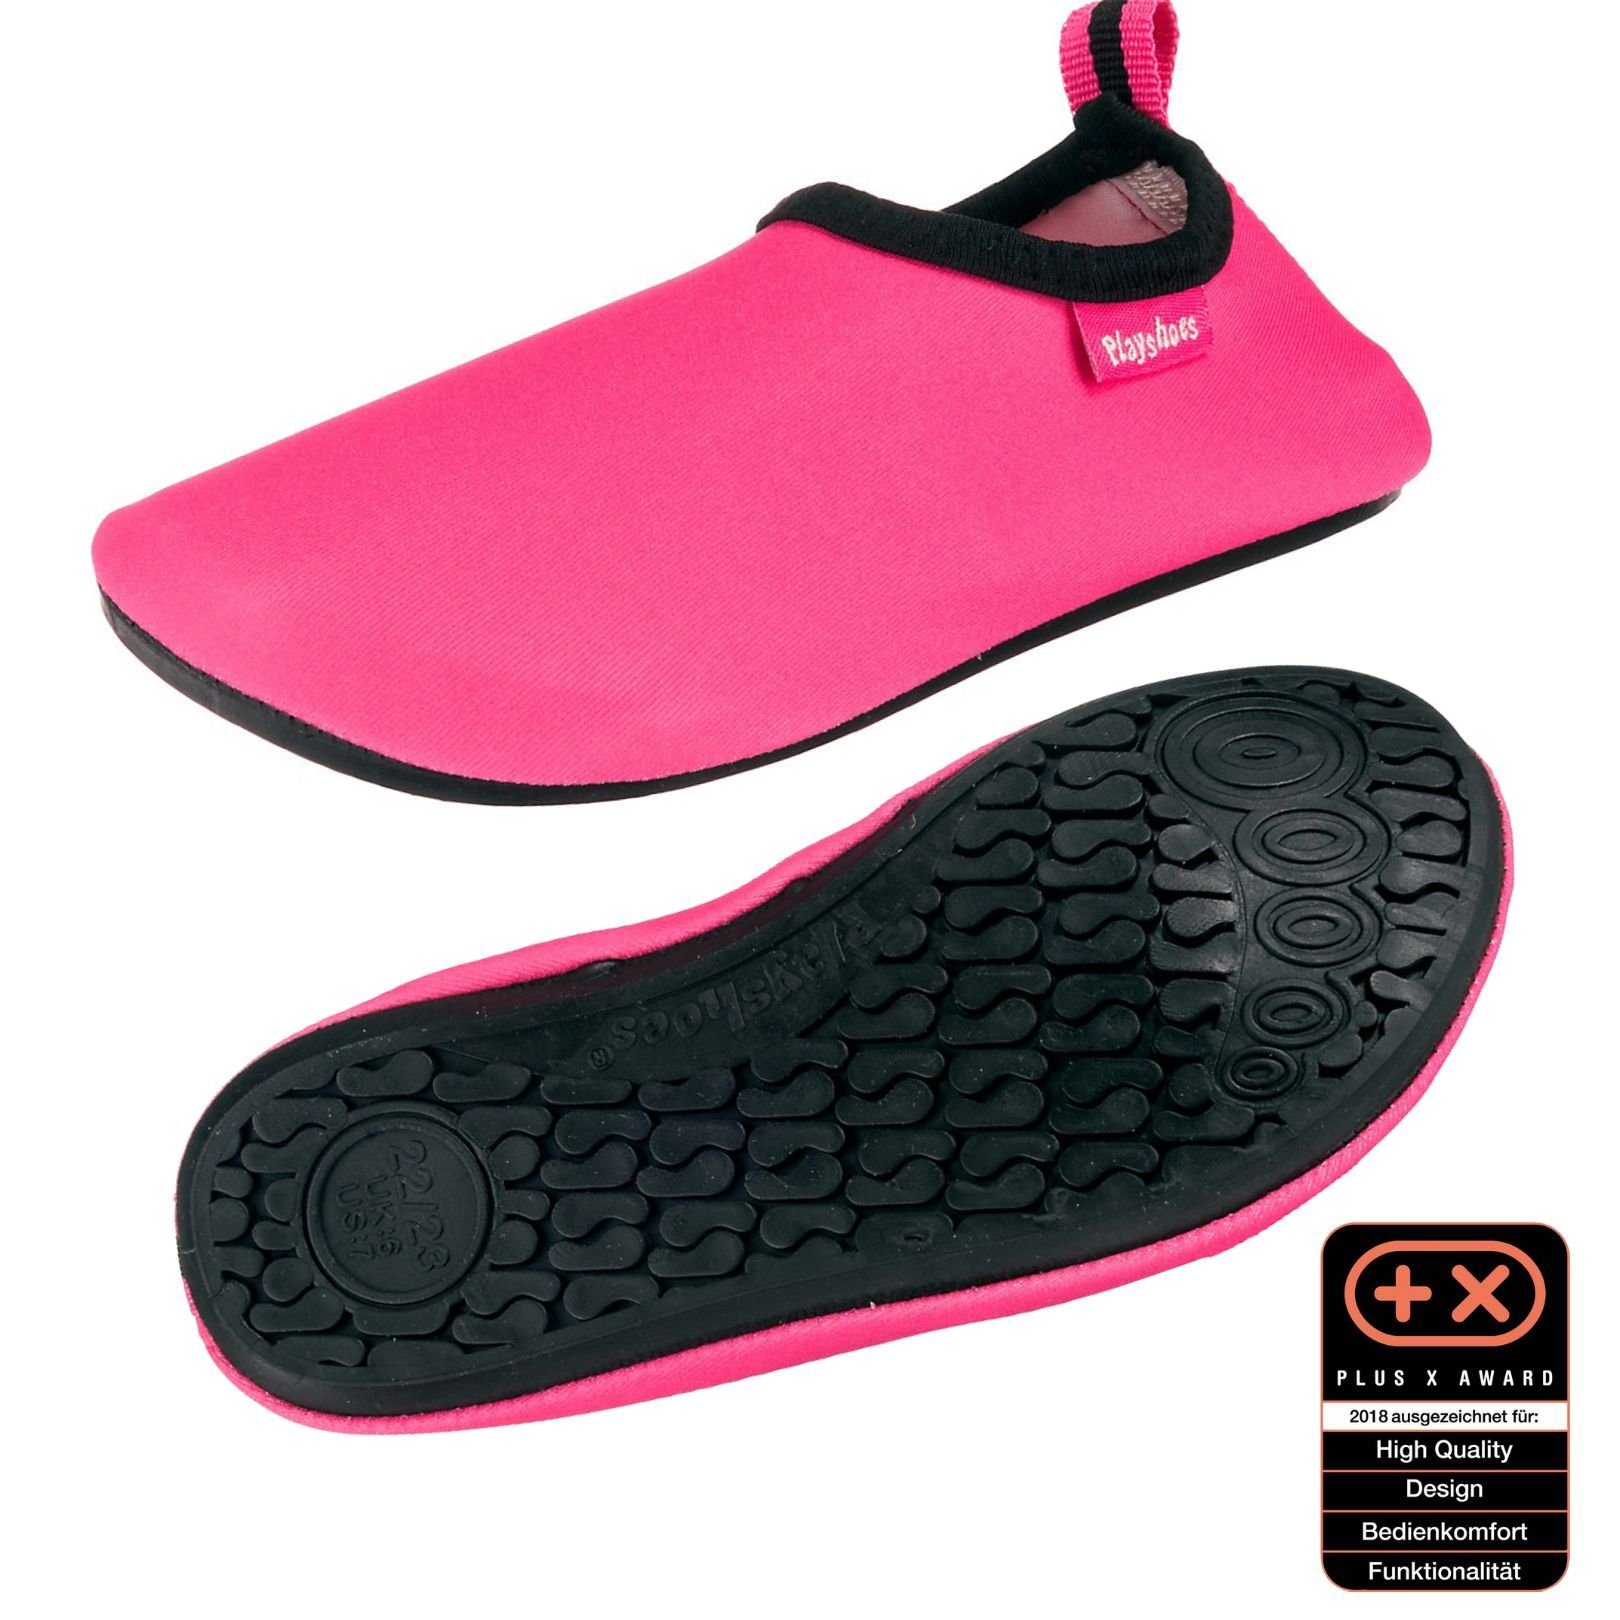 Playshoes Badeschuhe Wasserschuhe Schwimmschuhe, Uni Badeschuh flexible Passform, Barfuß-Schuh mit rutschhemmender Sohle rosa